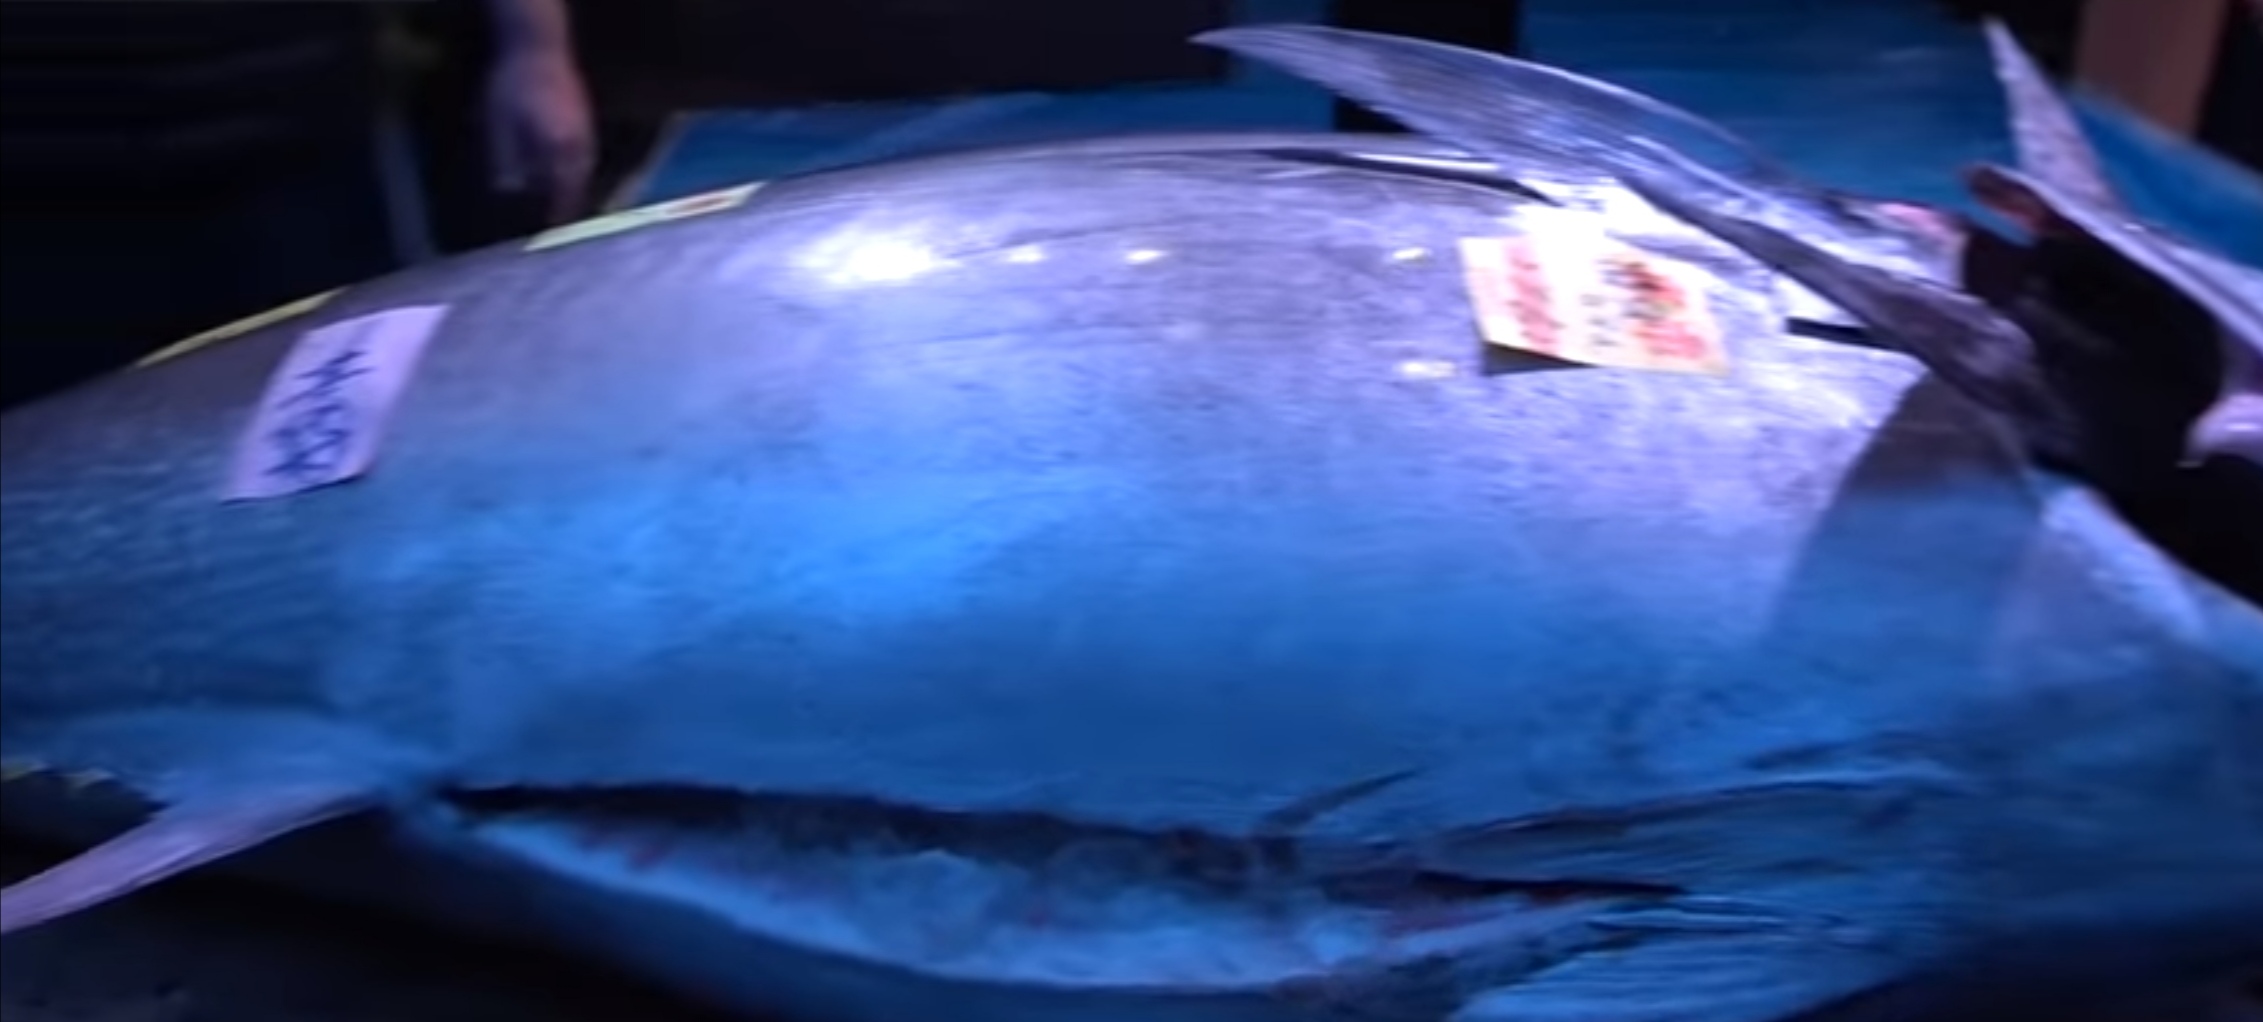 بالفيديو بيع سمكة تونة بـ1.8 مليون دولار في مزاد علني